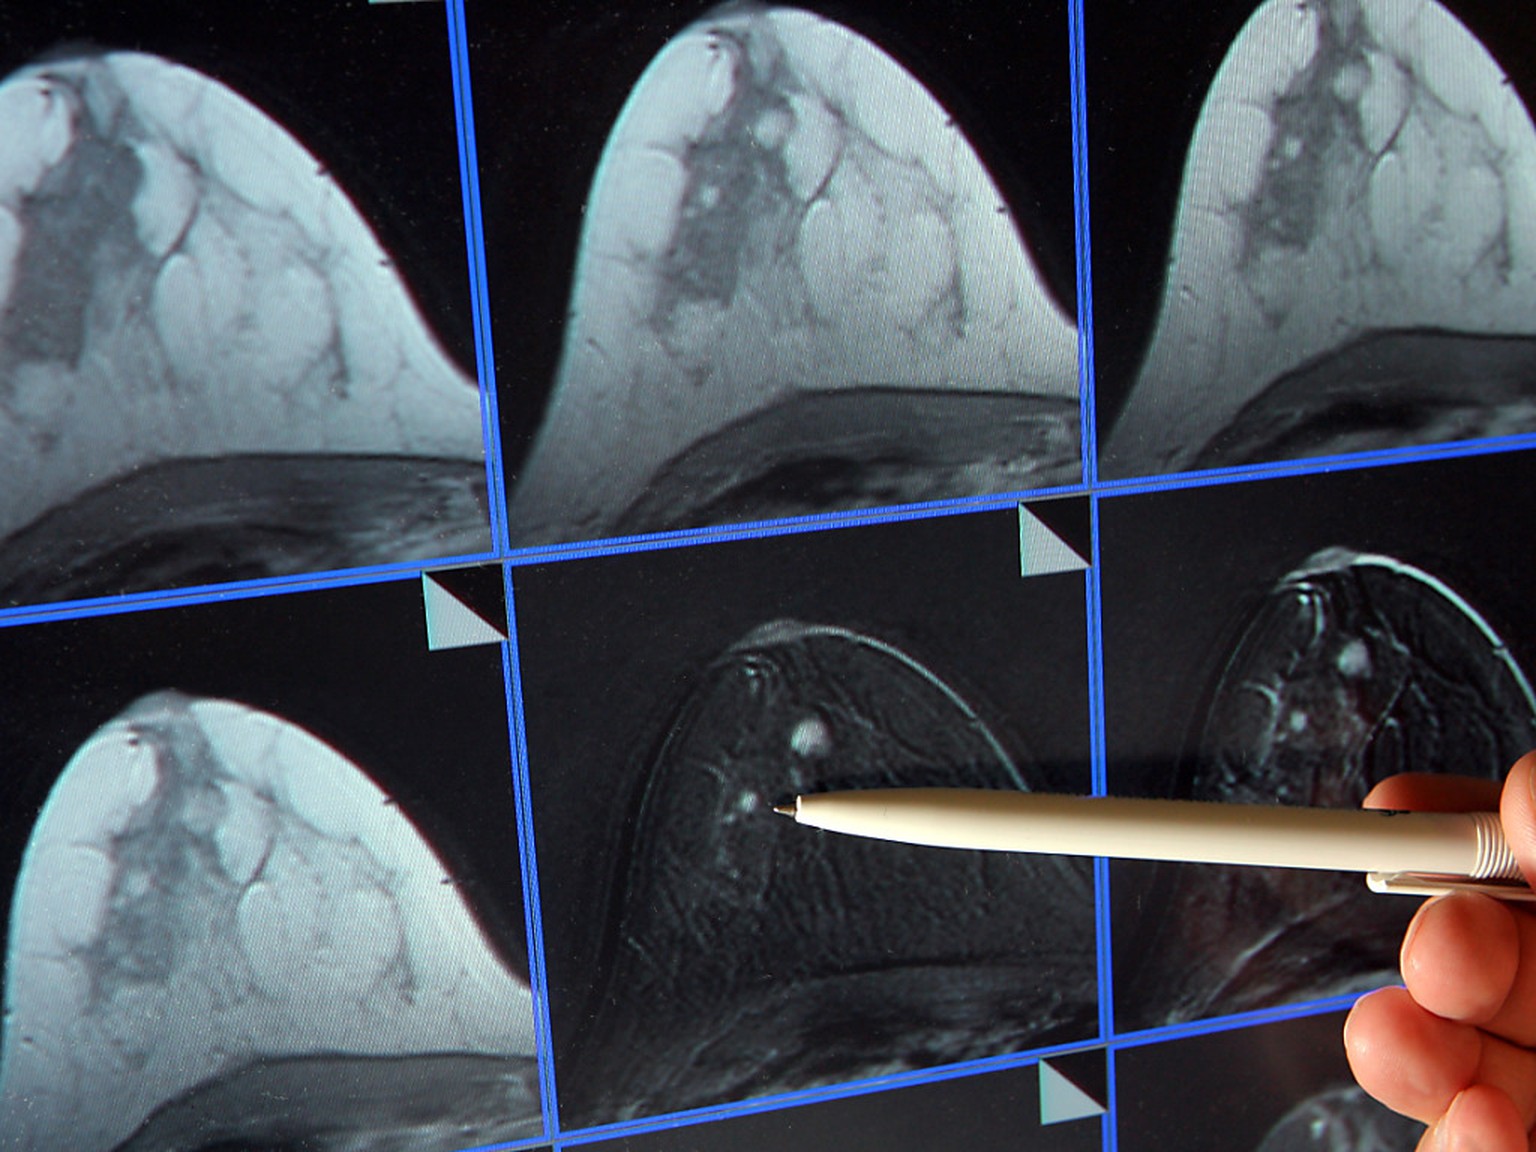 Bildschirmdarstellung einer Magnetresonanz-Mammographie. Dabei ist ein winziger Tumor in der Brust einer Patientin zu sehen. (Archivbild)